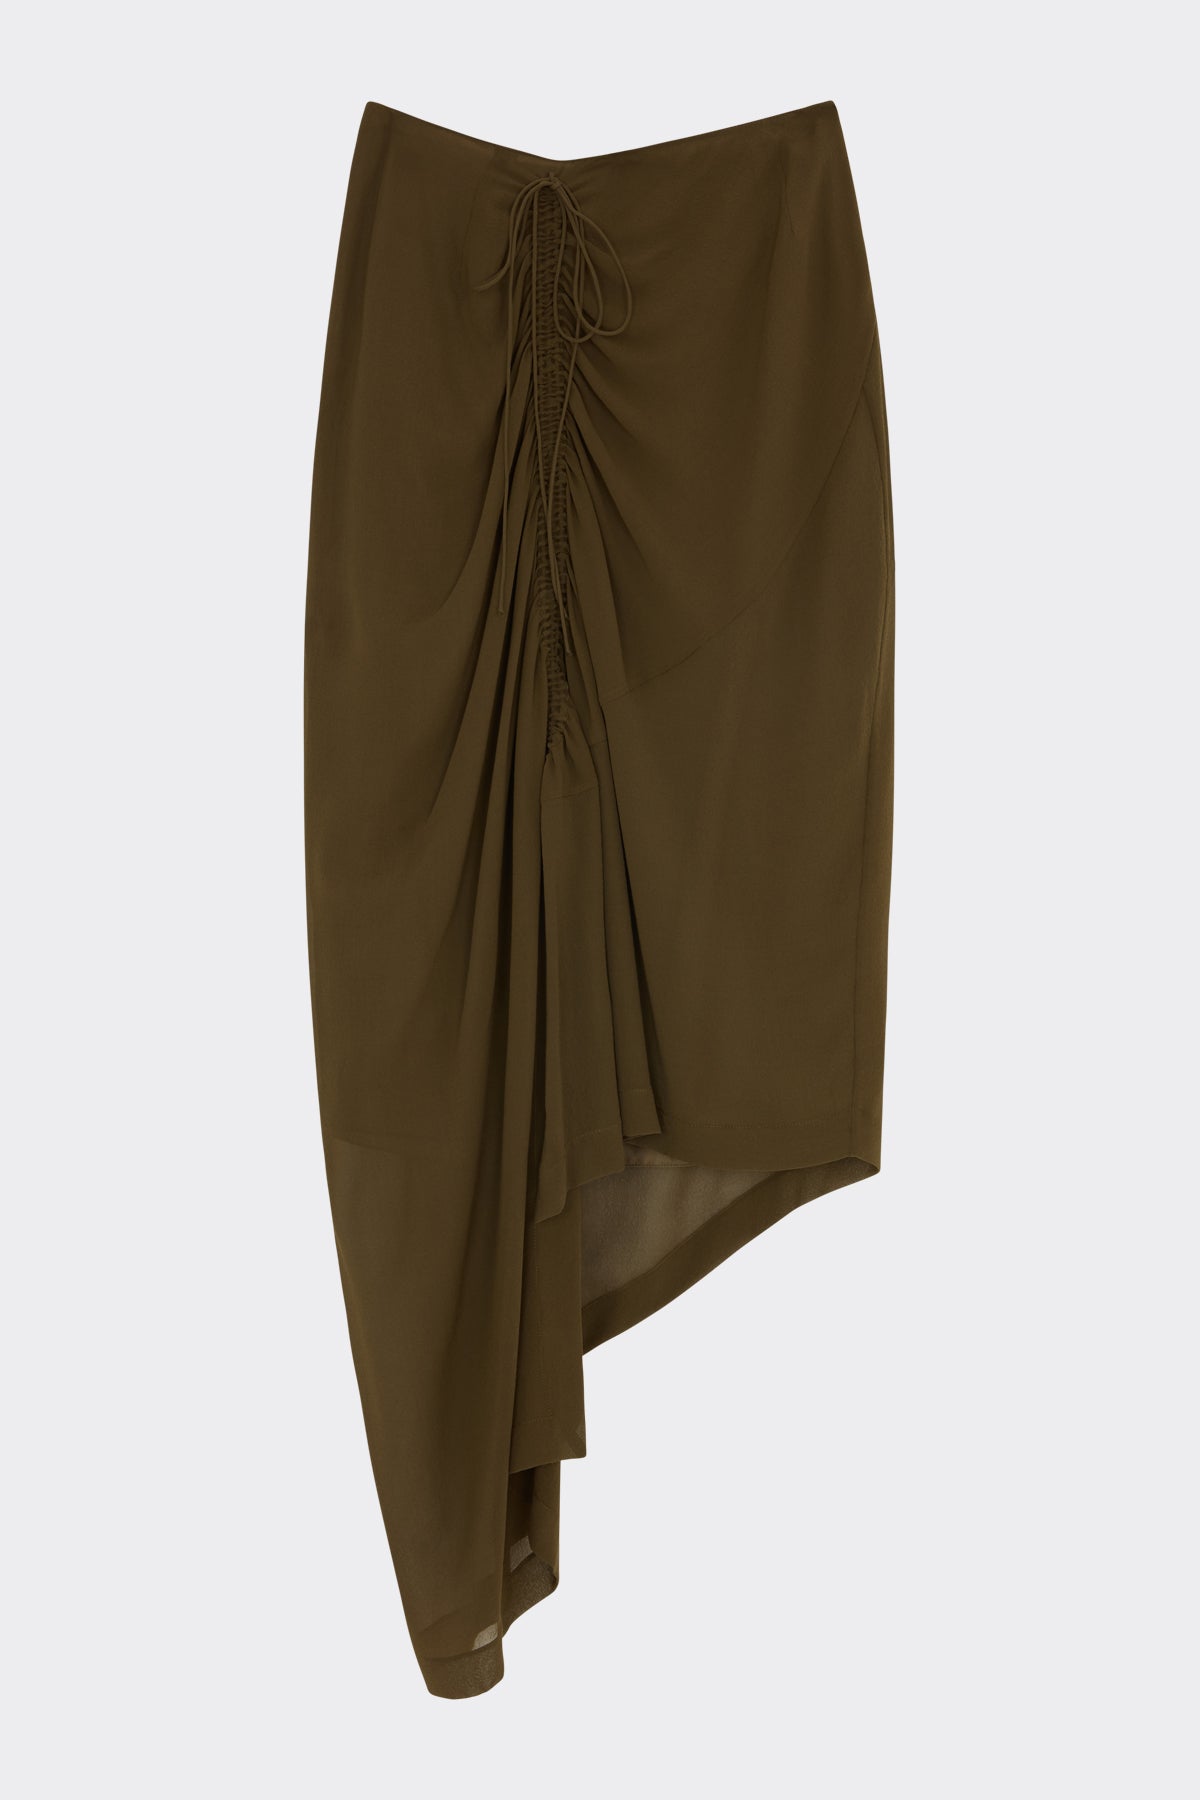 Zaire Skirt in Seaweed| Noon by Noor